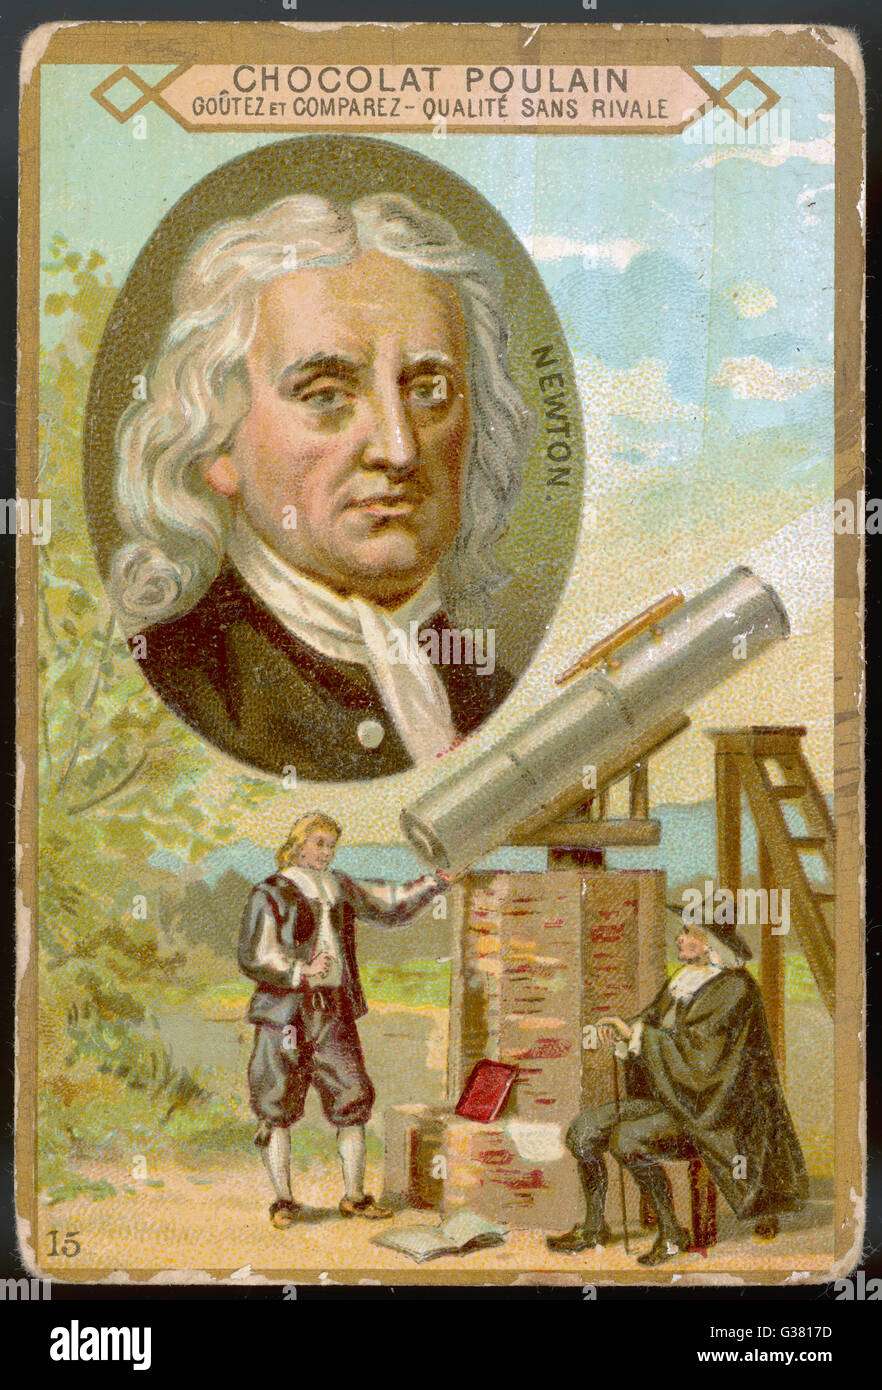 SIR ISAAC NEWTON - scientifique, démontrant son télescope Date : 1642-1727 Banque D'Images